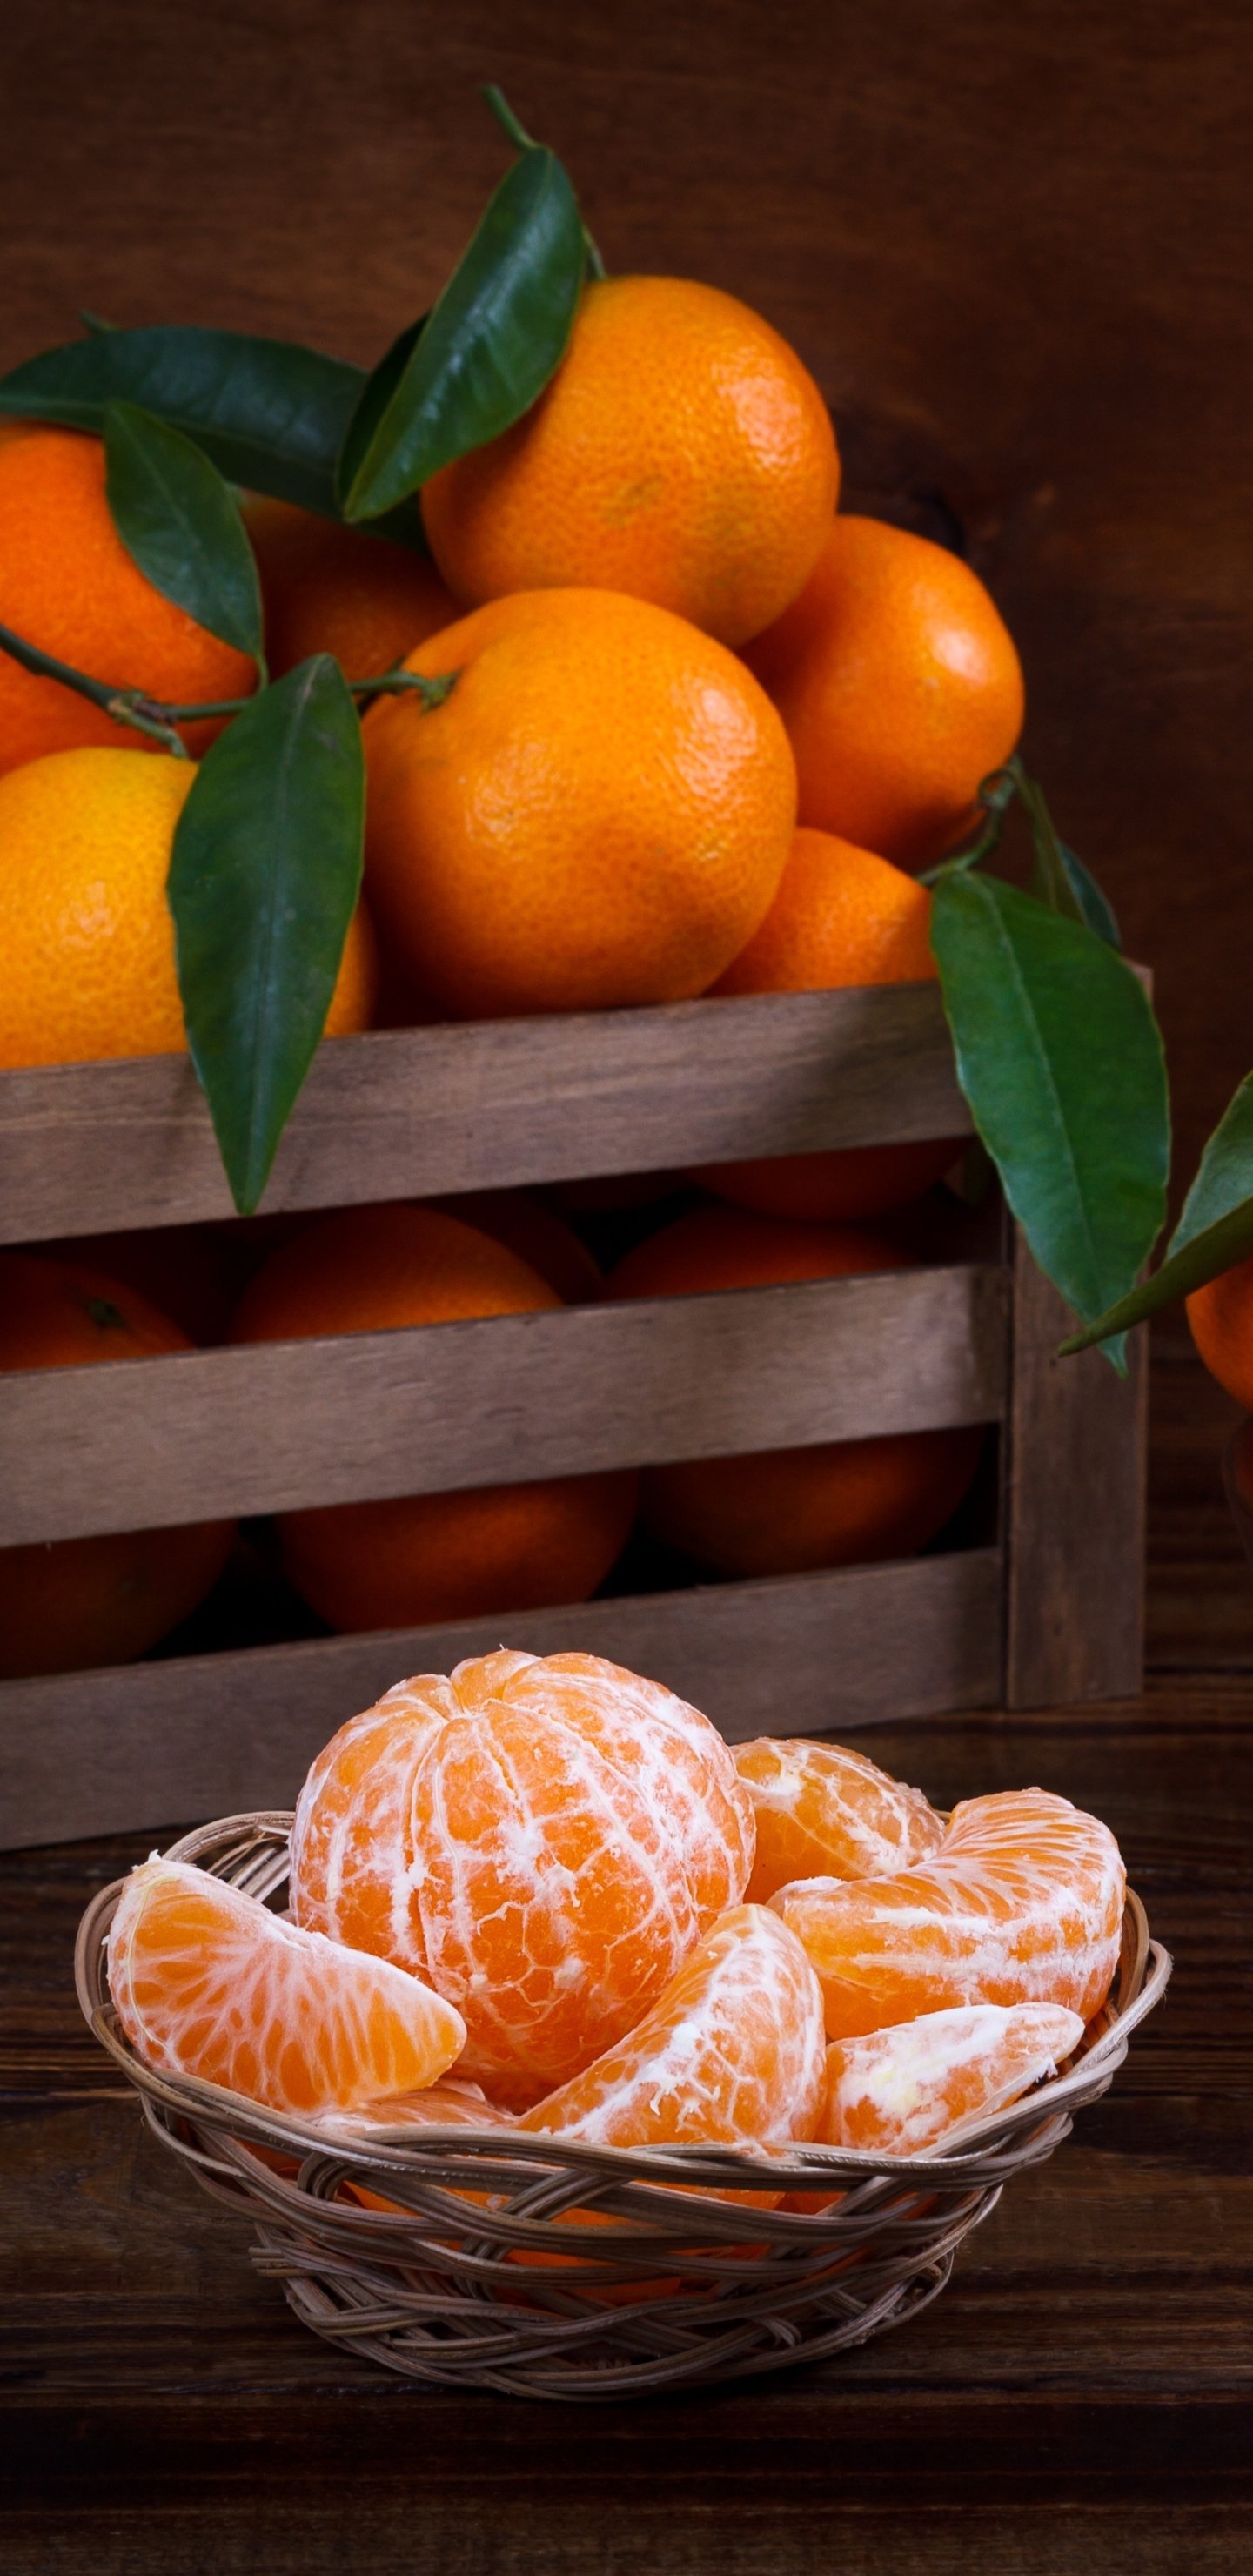 Мандарины Citrus. Апельсин мандарин грейпфрут. Hanif Chase мандарины. Мандрин.